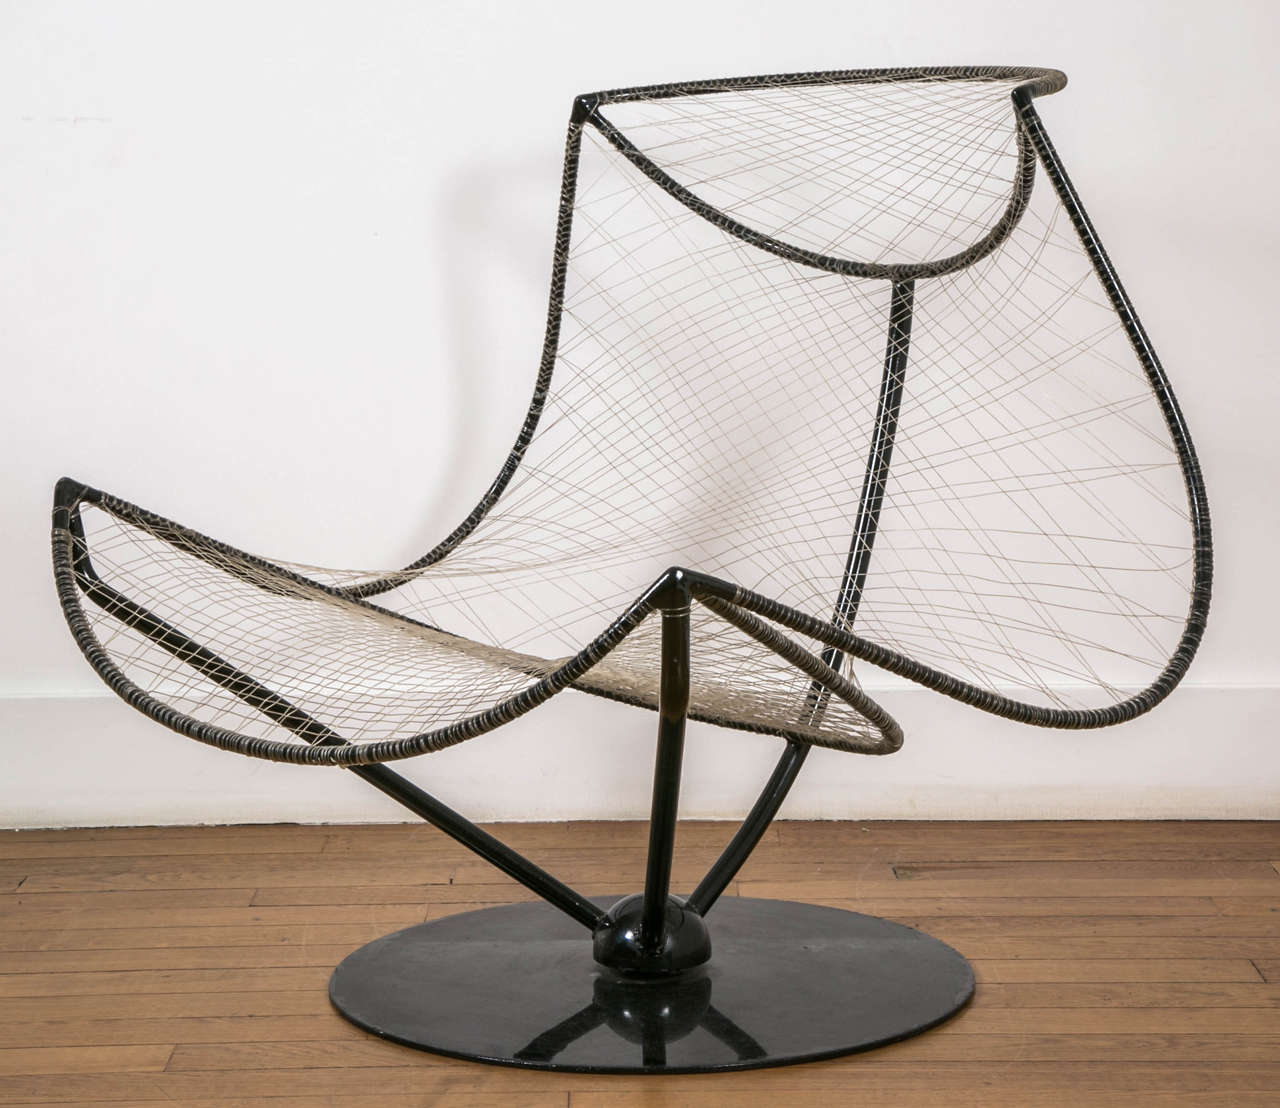 A sculpture armchair called 